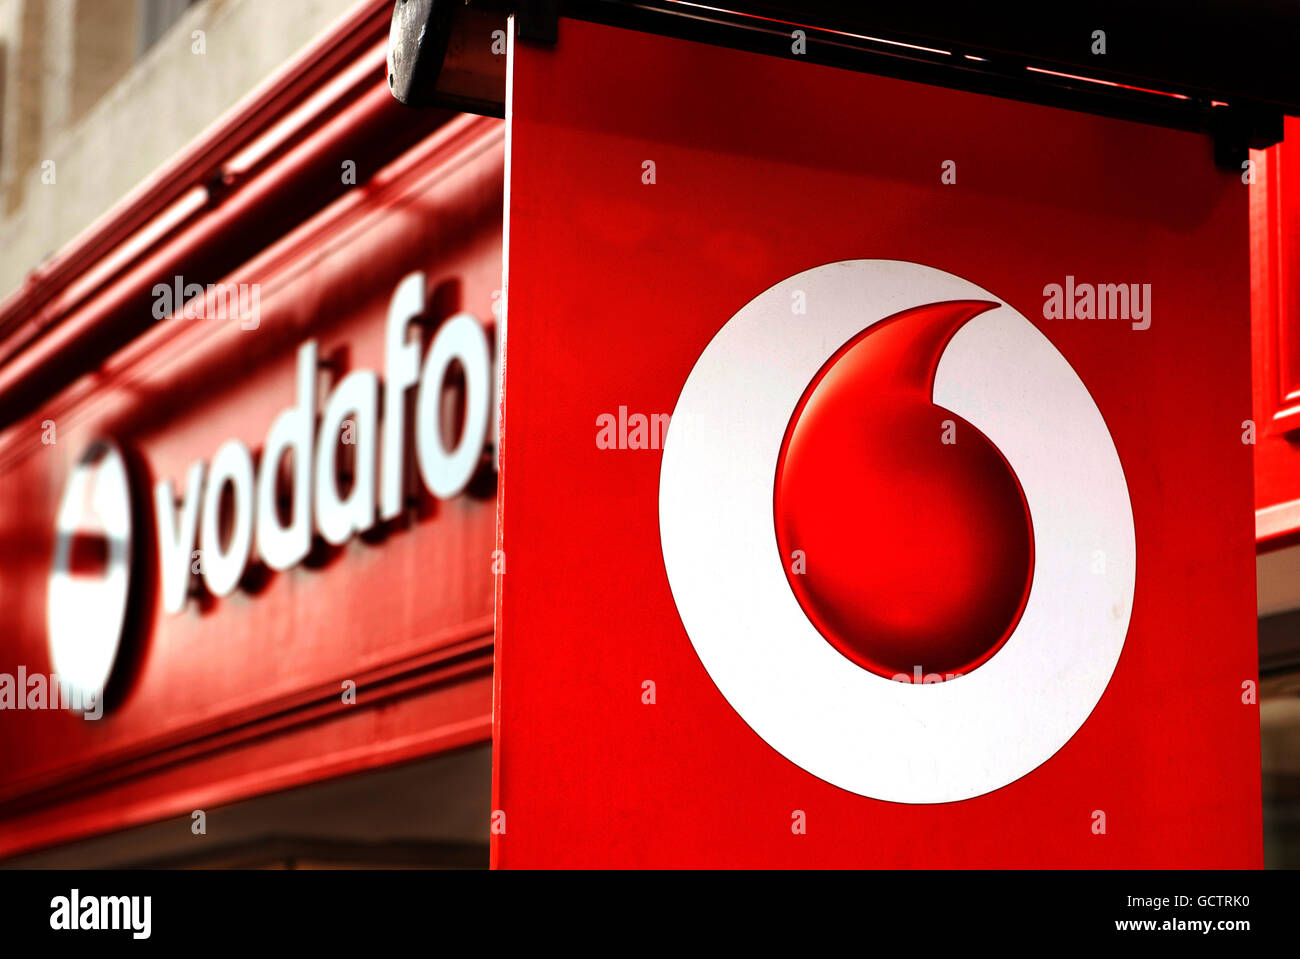 Neues Vodafone Signage. Eine allgemeine Ansicht des vodafone-Geschäfts in der Oxford Street, London Stockfoto